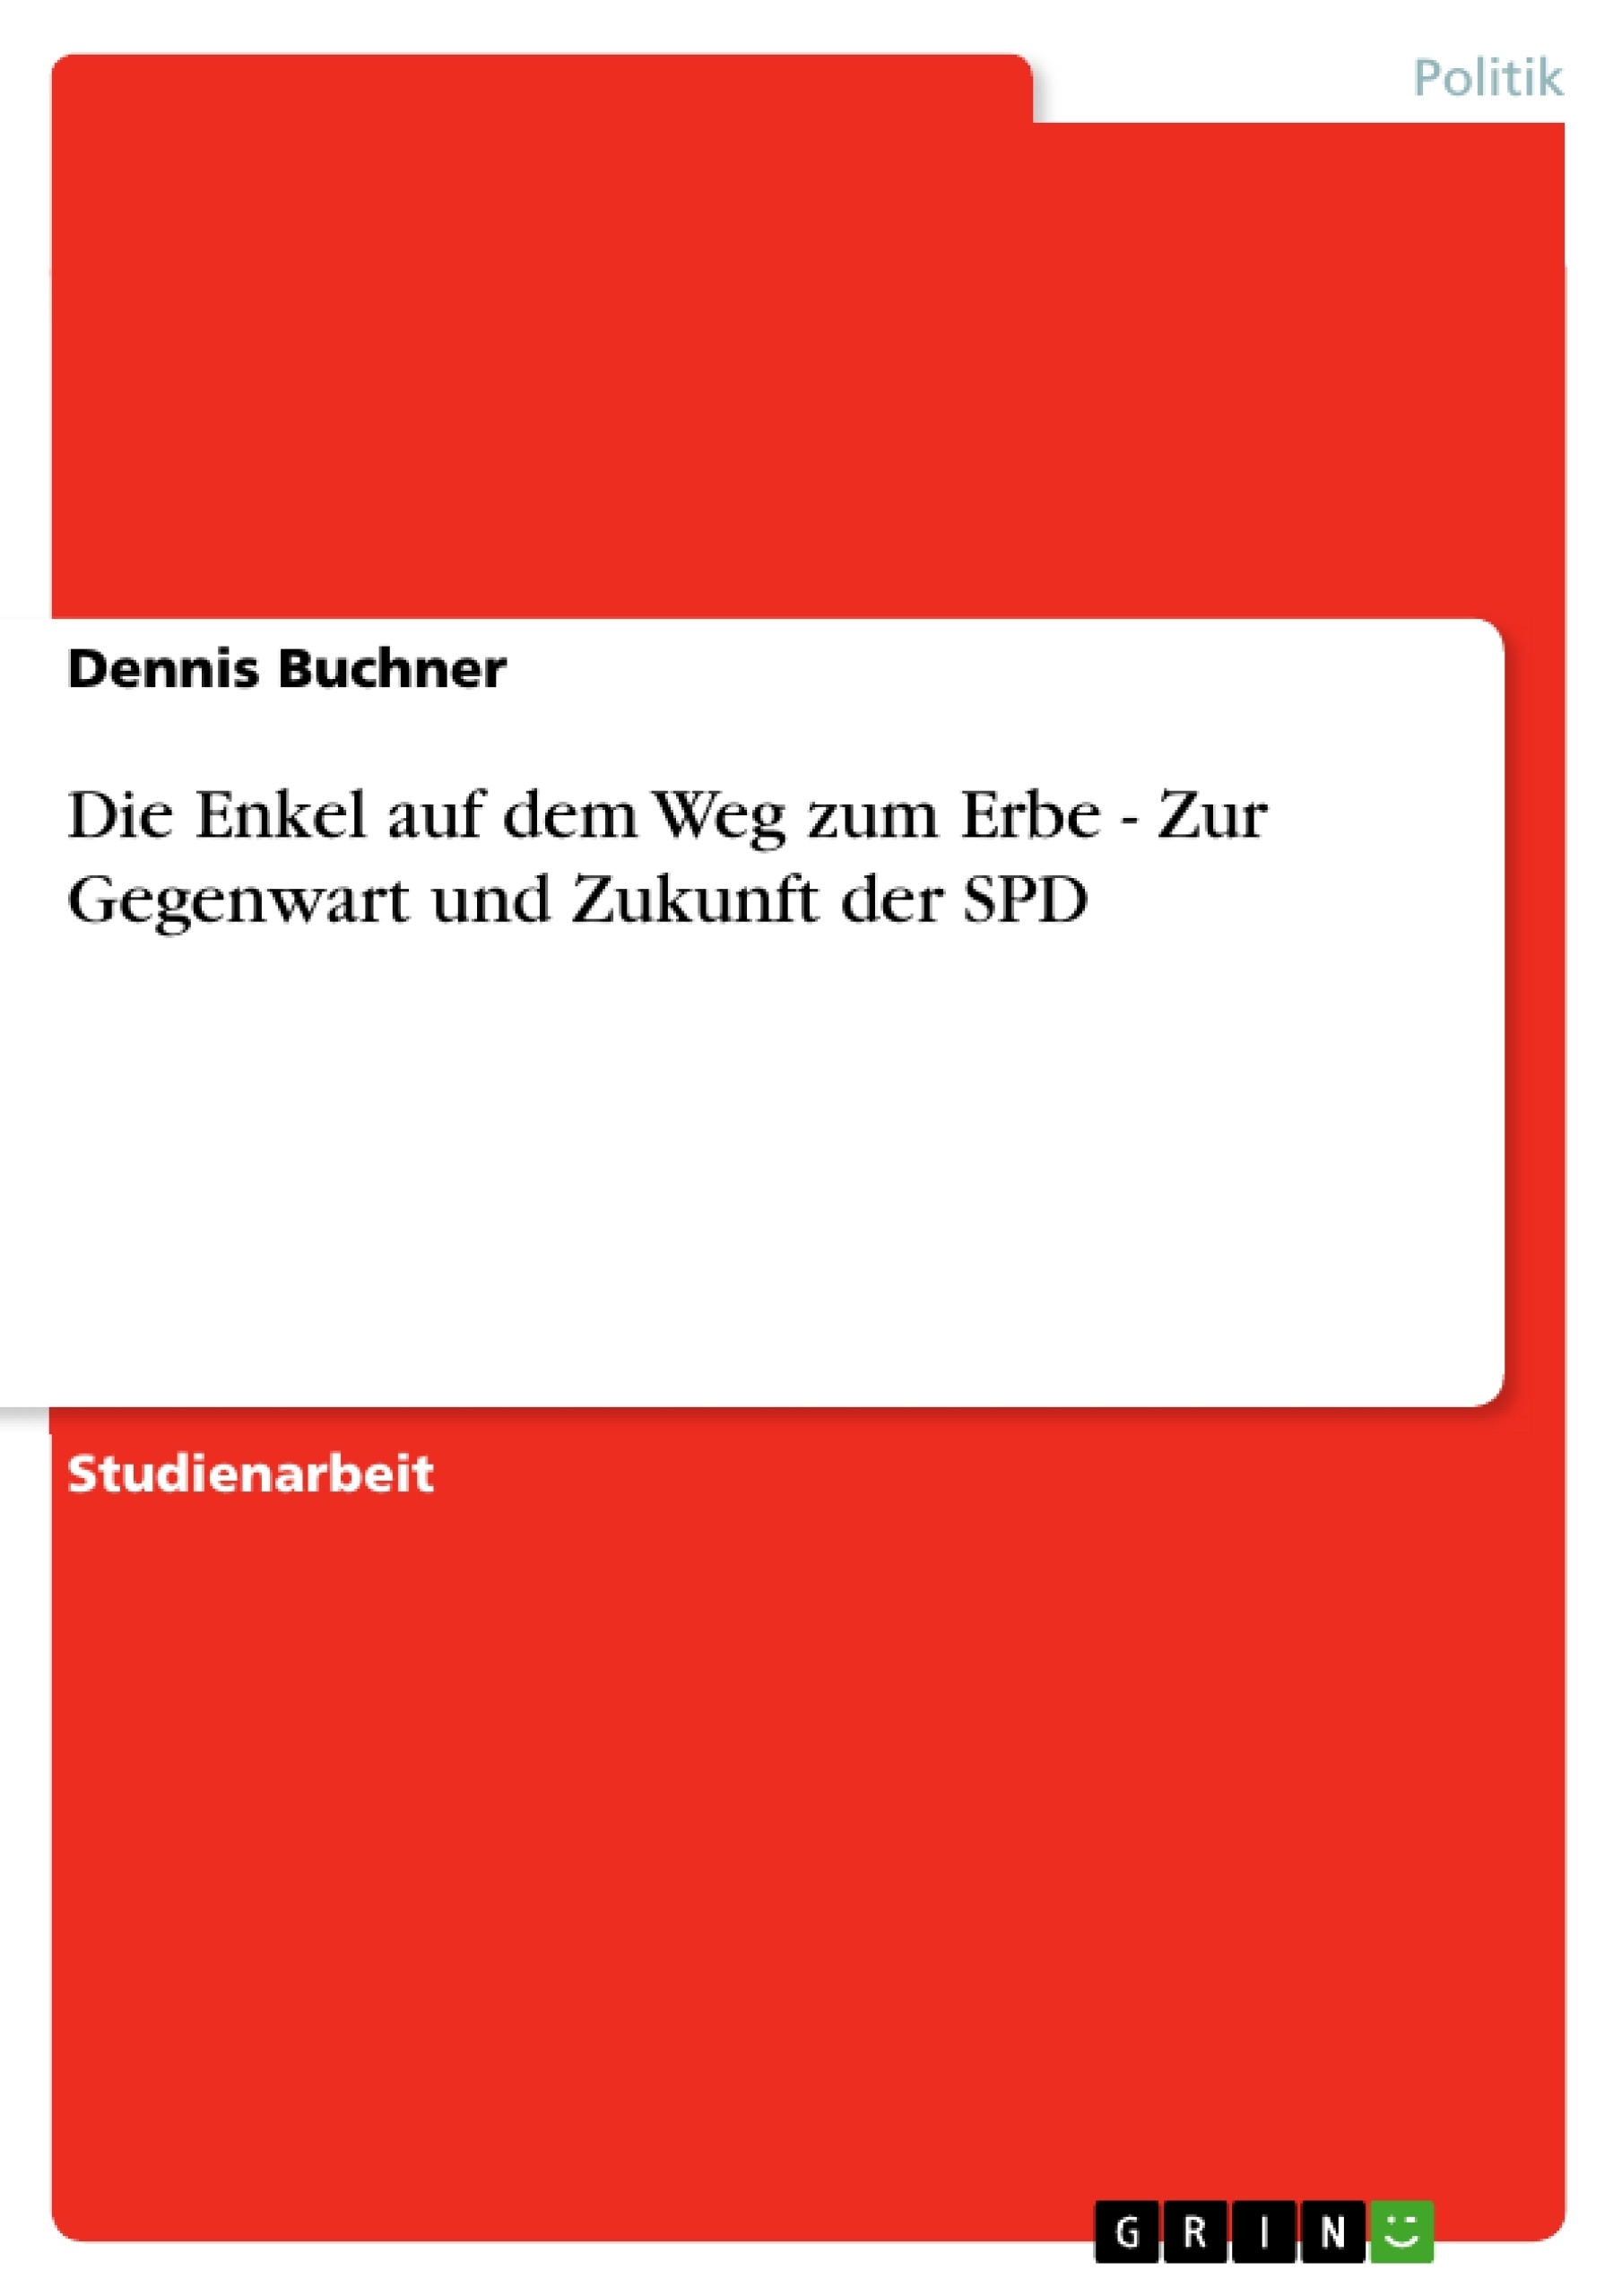 Título: Die Enkel auf dem Weg zum Erbe - Zur Gegenwart und Zukunft der SPD